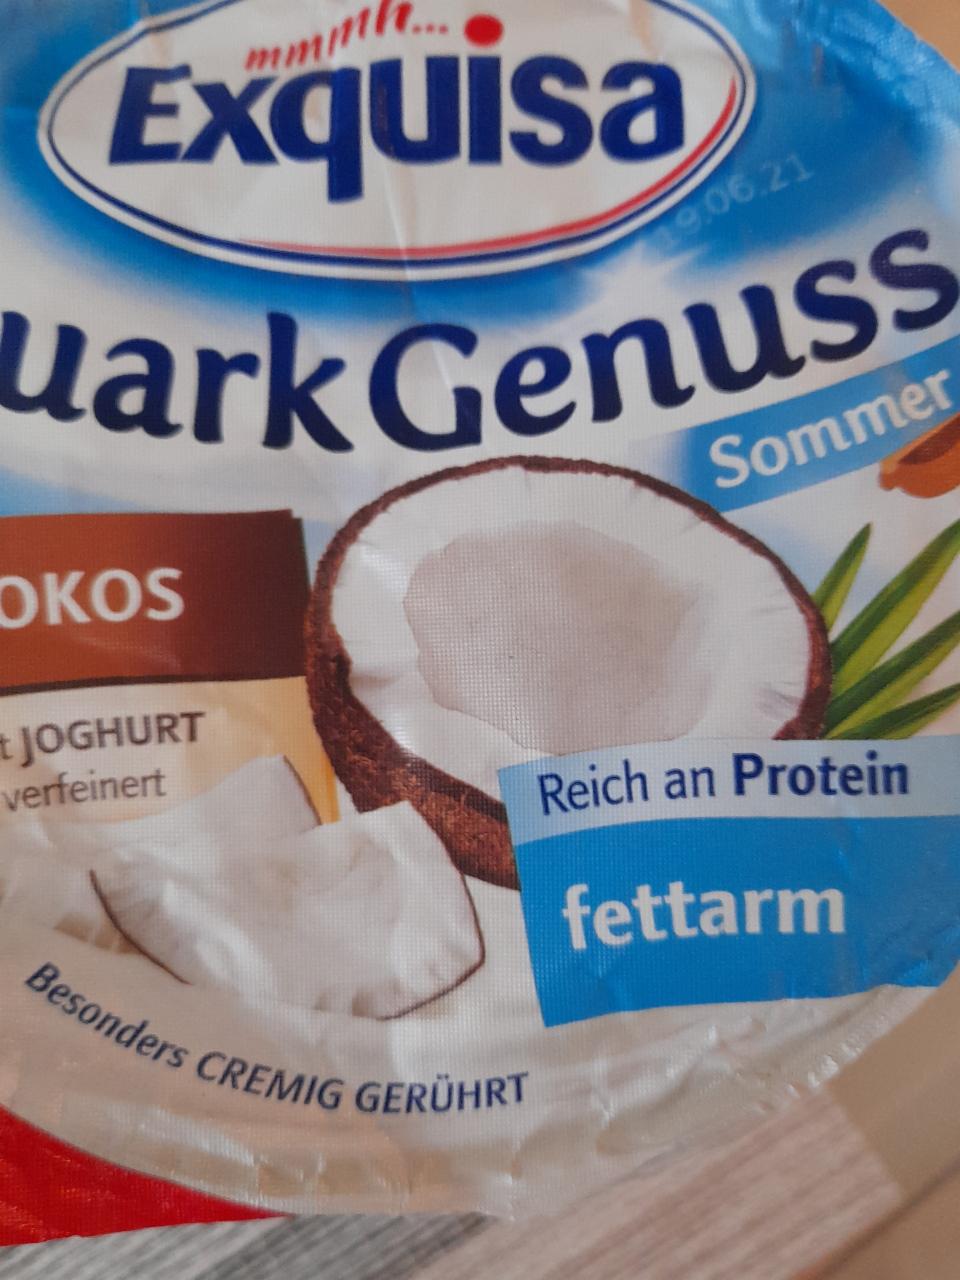 Fotografie - Quark Genuss Kokos mit Joghurt fettarm Exquisa